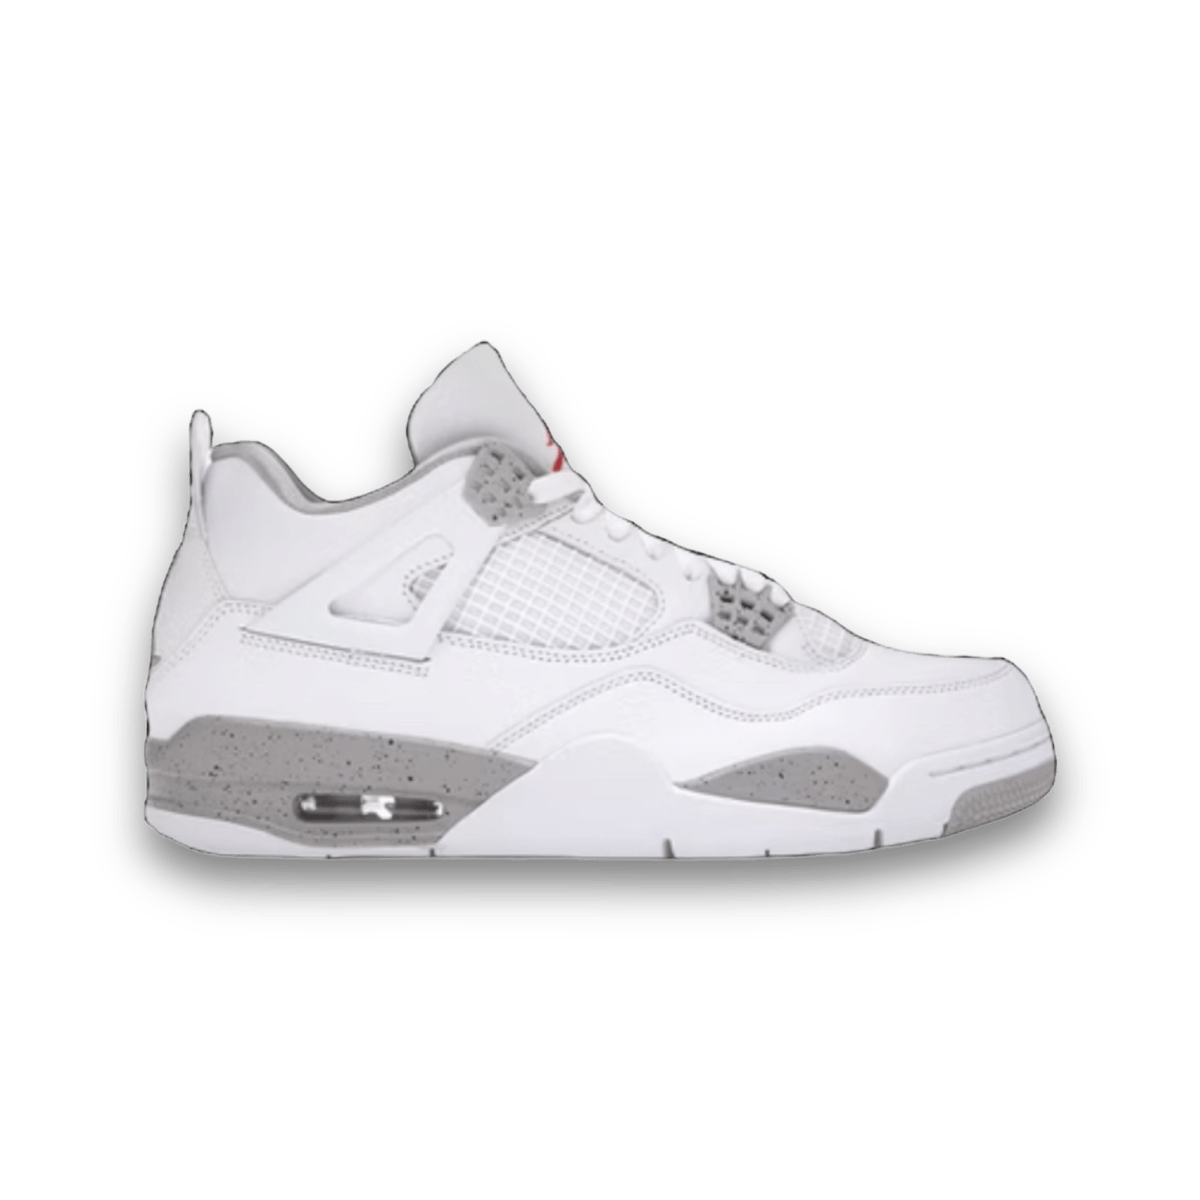 Jordan 4 Retro White Oreo (2021) - Mid Sneaker - Jawns on Fire Sneakers & Streetwear